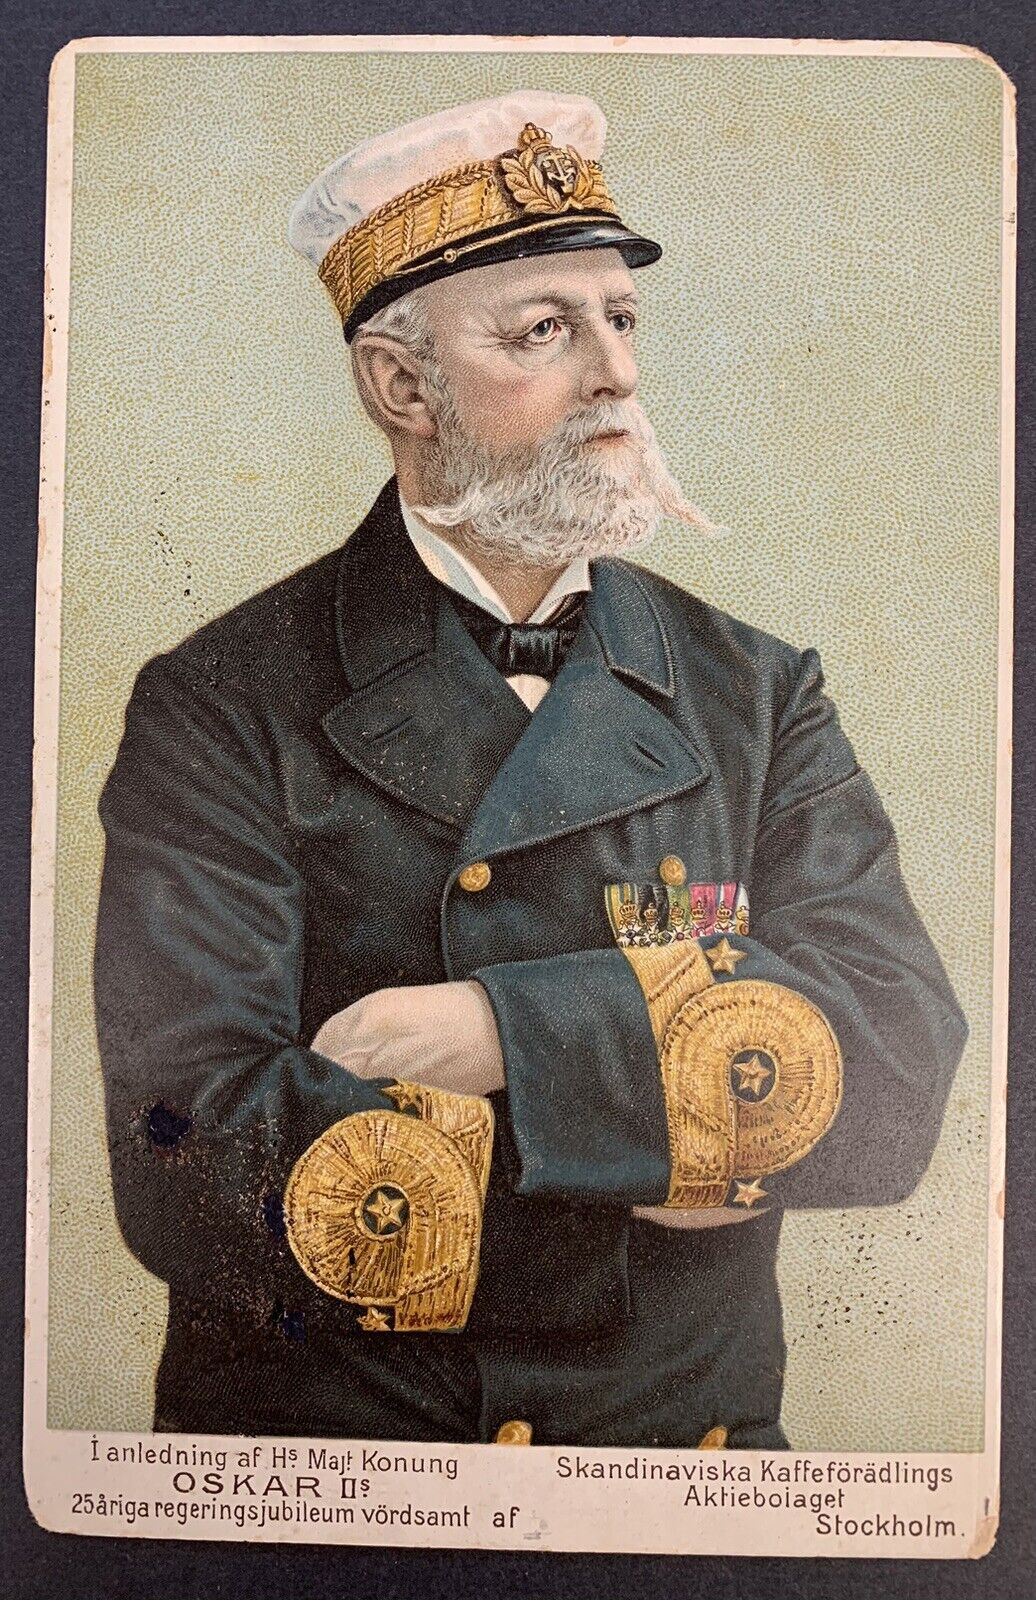 Oskar II, King of Sweden, 1897, 25th Jubilee, on Card Measuring  170mm x 110 mm